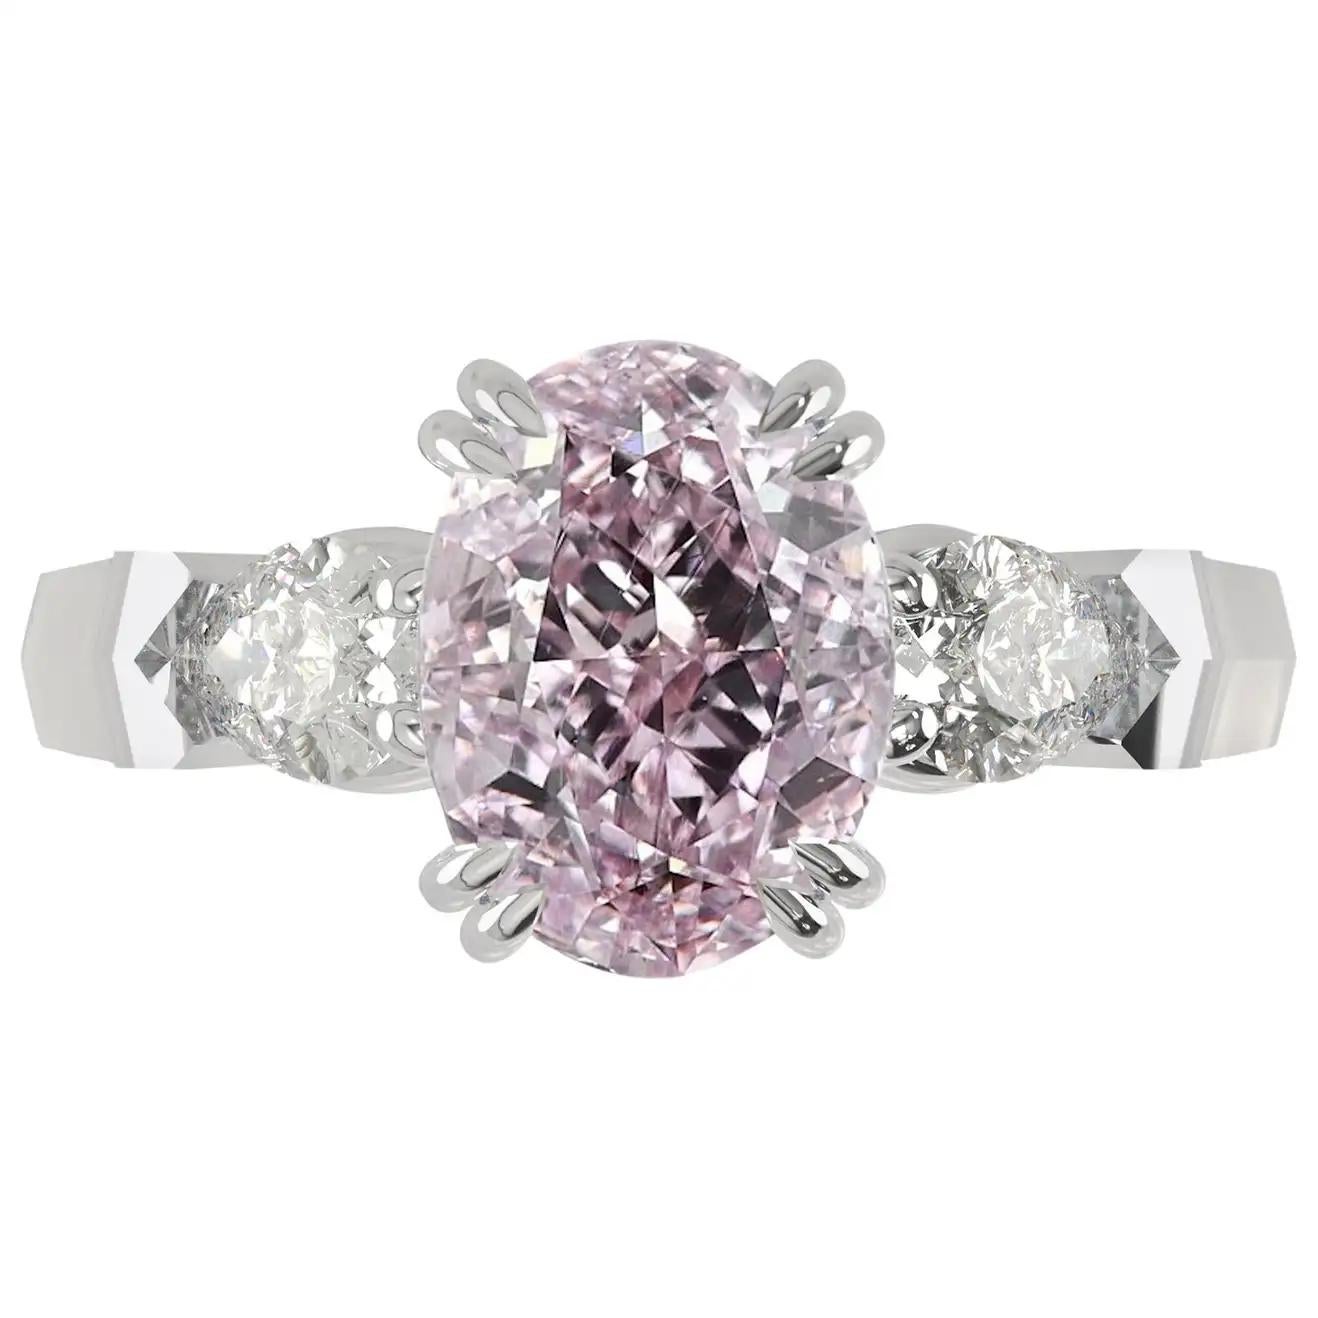 1 carat pink diamond price